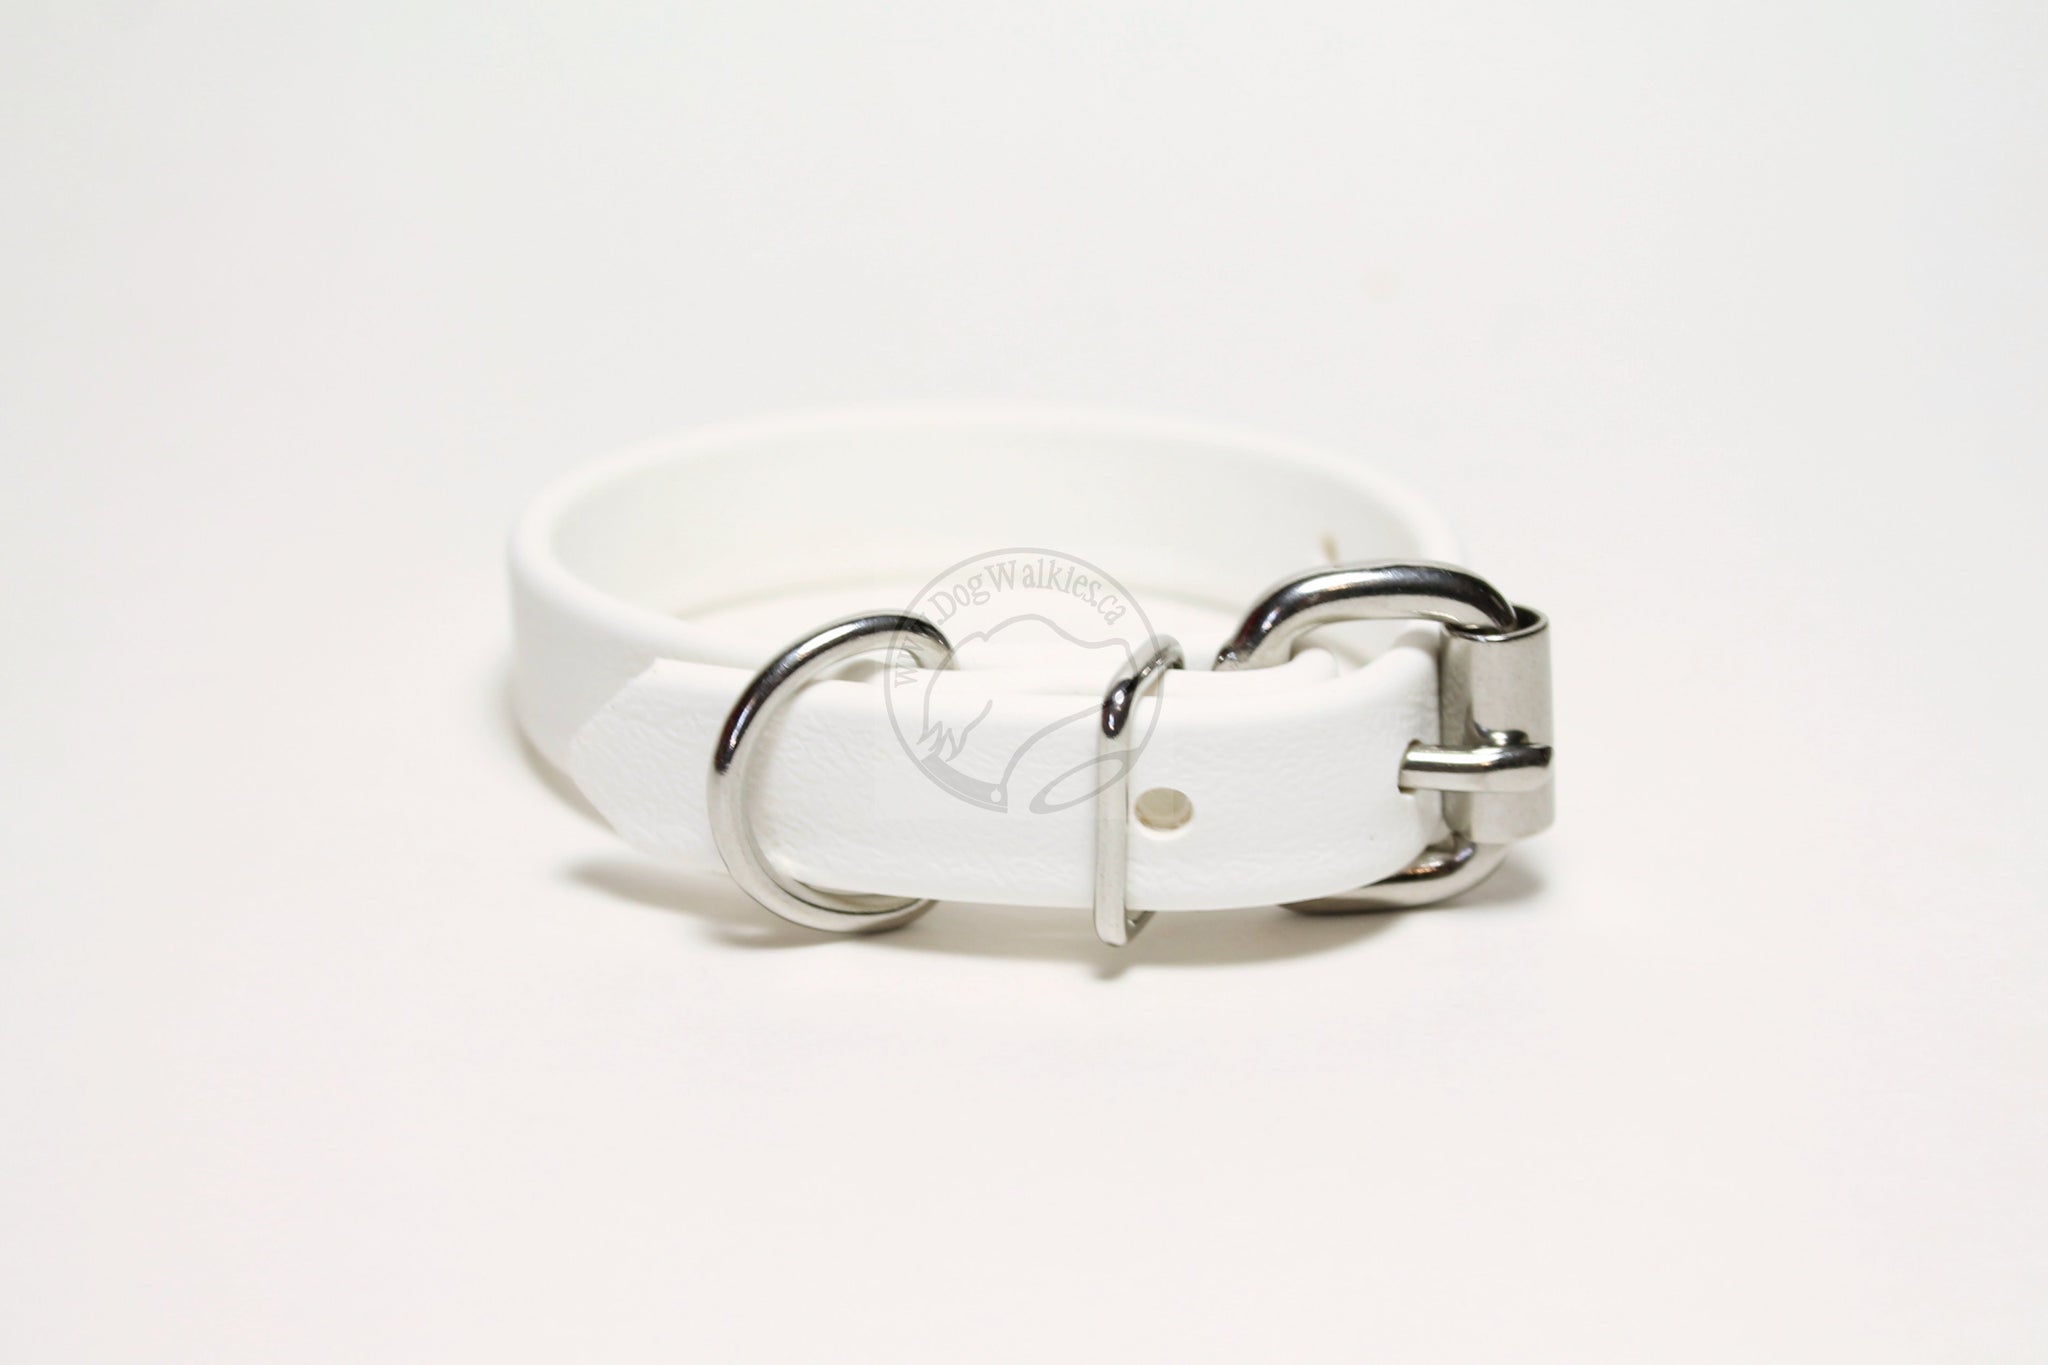 Snow White Biothane Dog Collar - 5/8"(16mm) wide